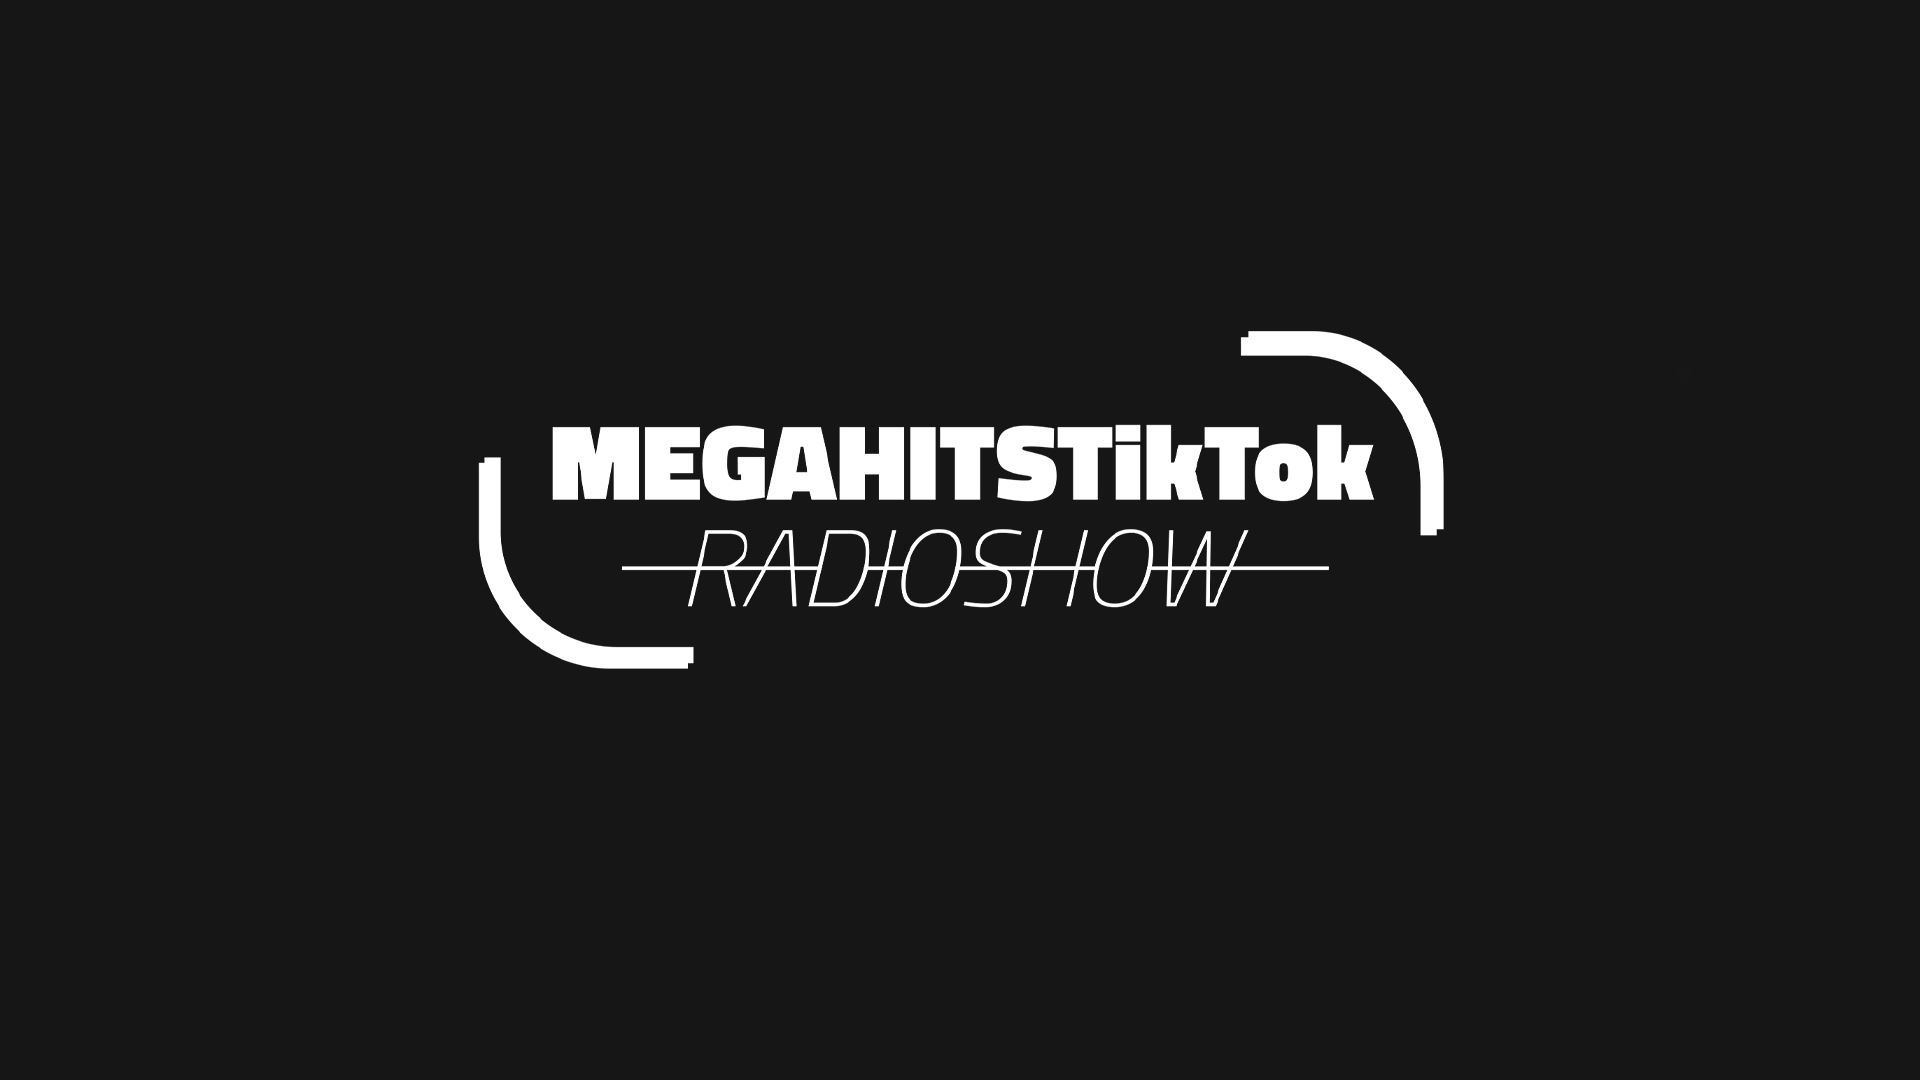 MEGAHITSTIKTOK Radioshow #73